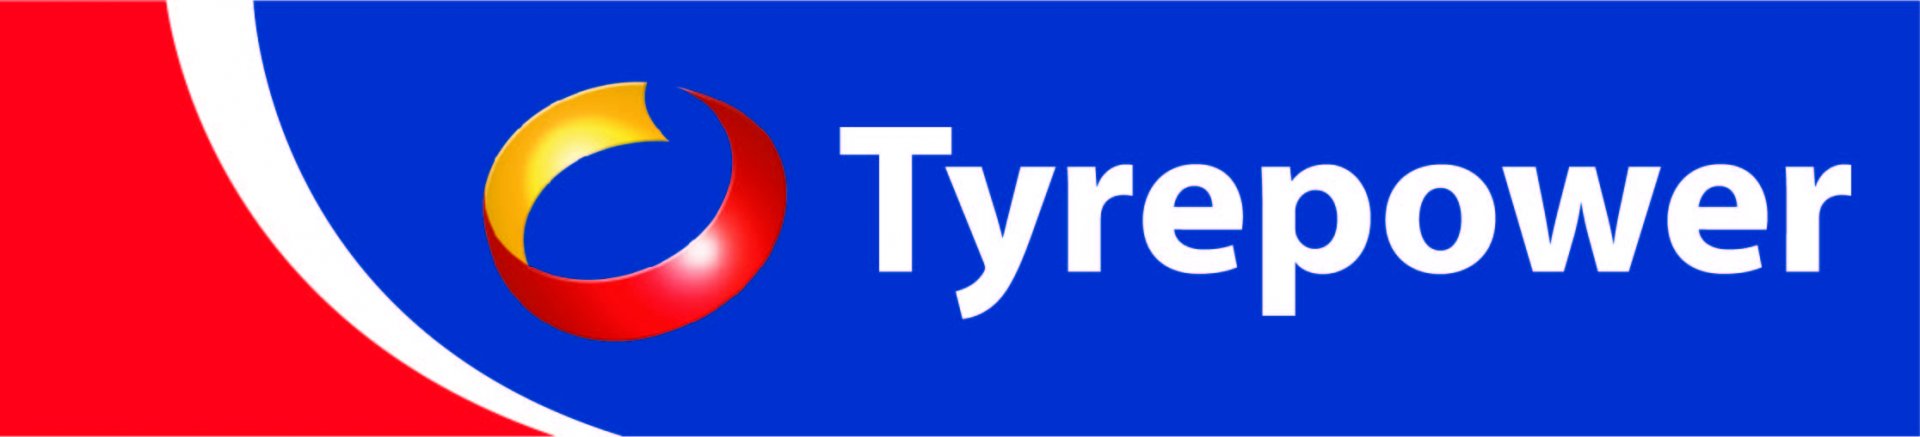 Tyrepower Logo Cmyk High Res